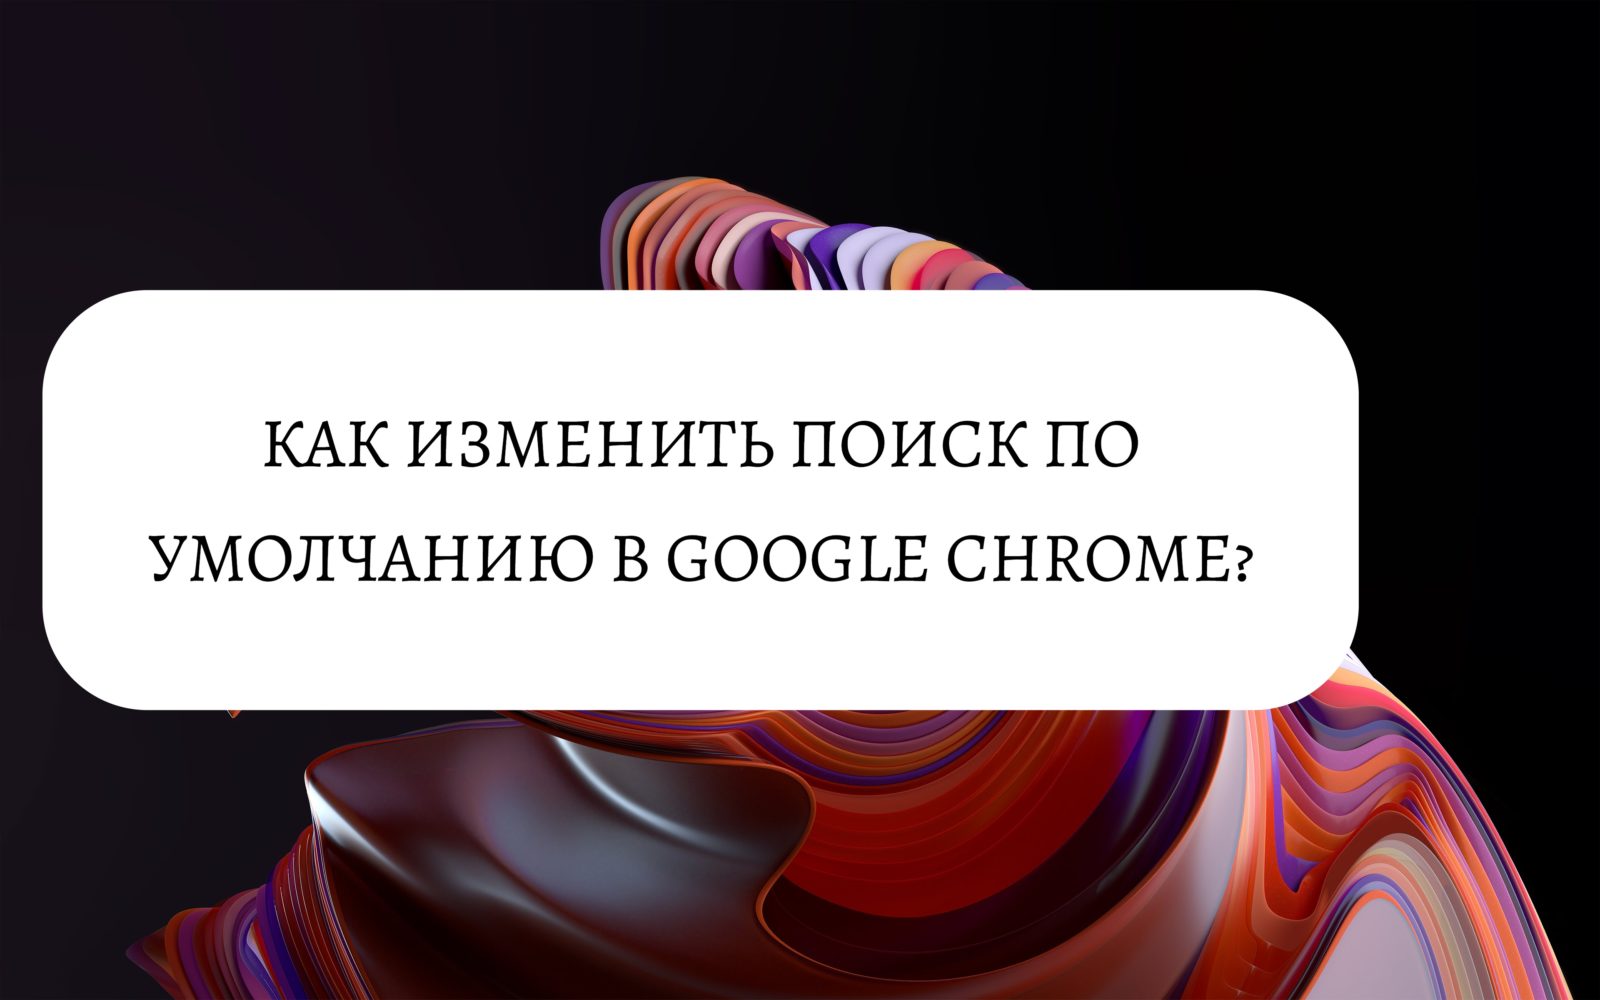 Как изменить поиск по умолчанию в Google Chrome?